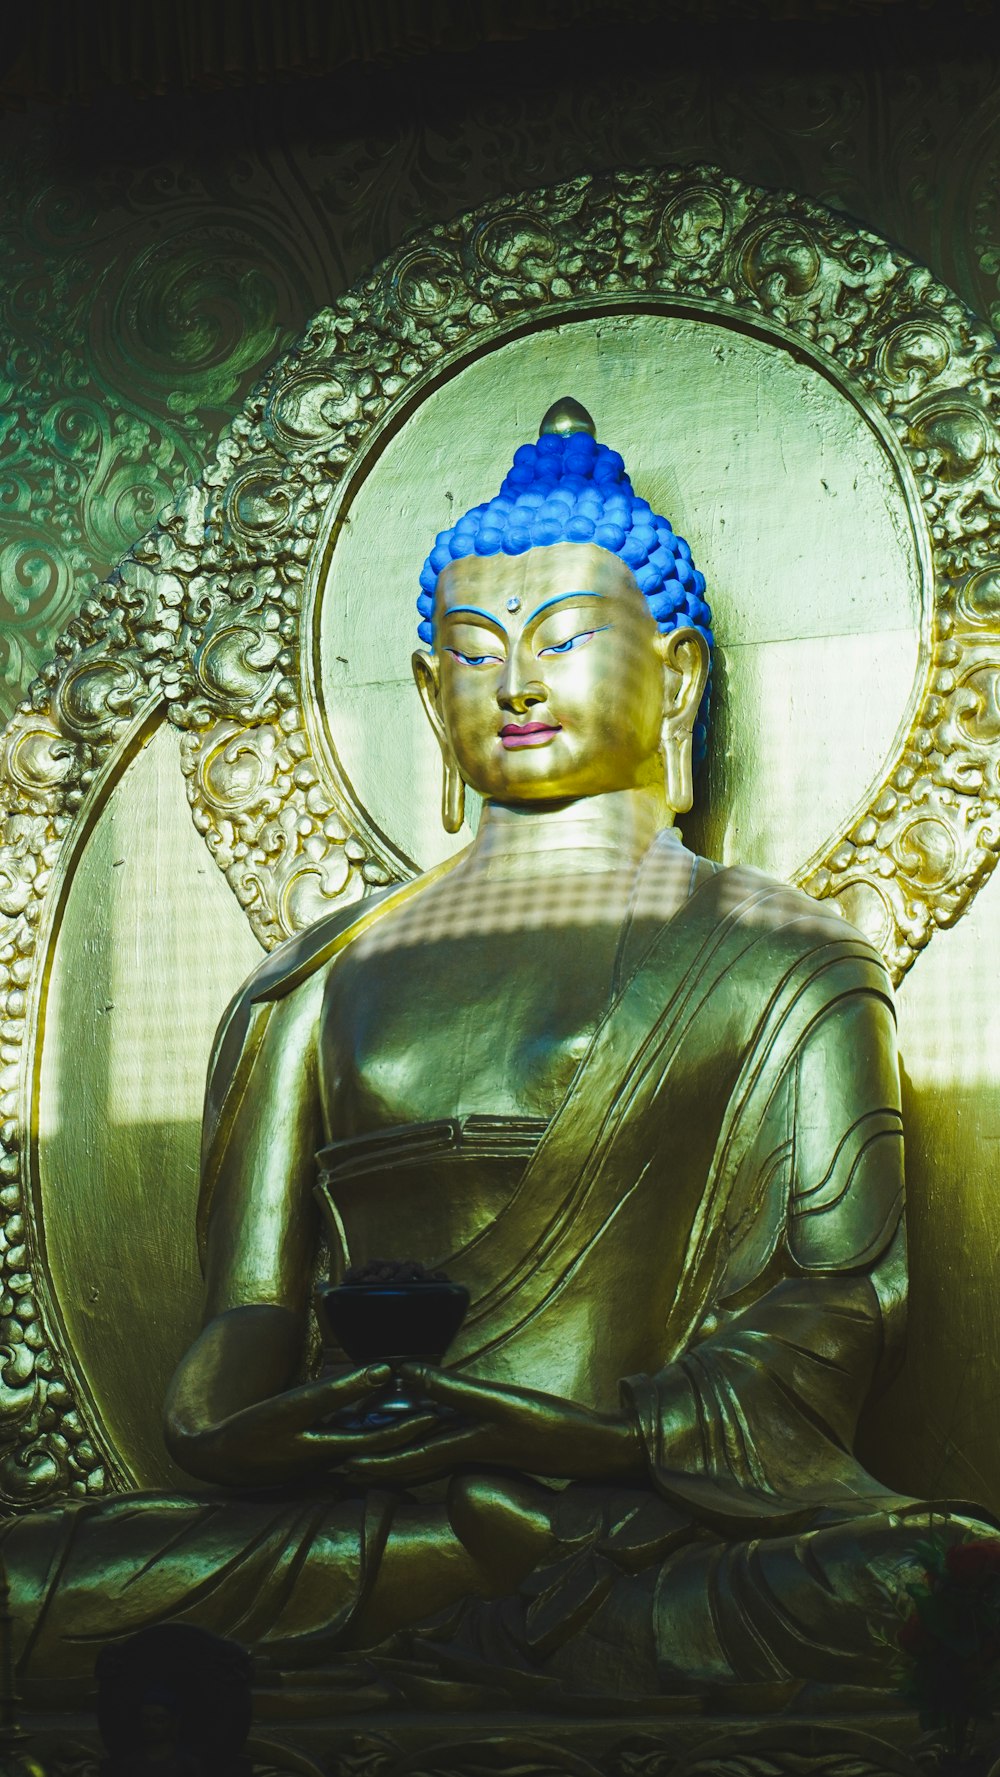 Una estatua de Buda dorado sentada frente a una pared